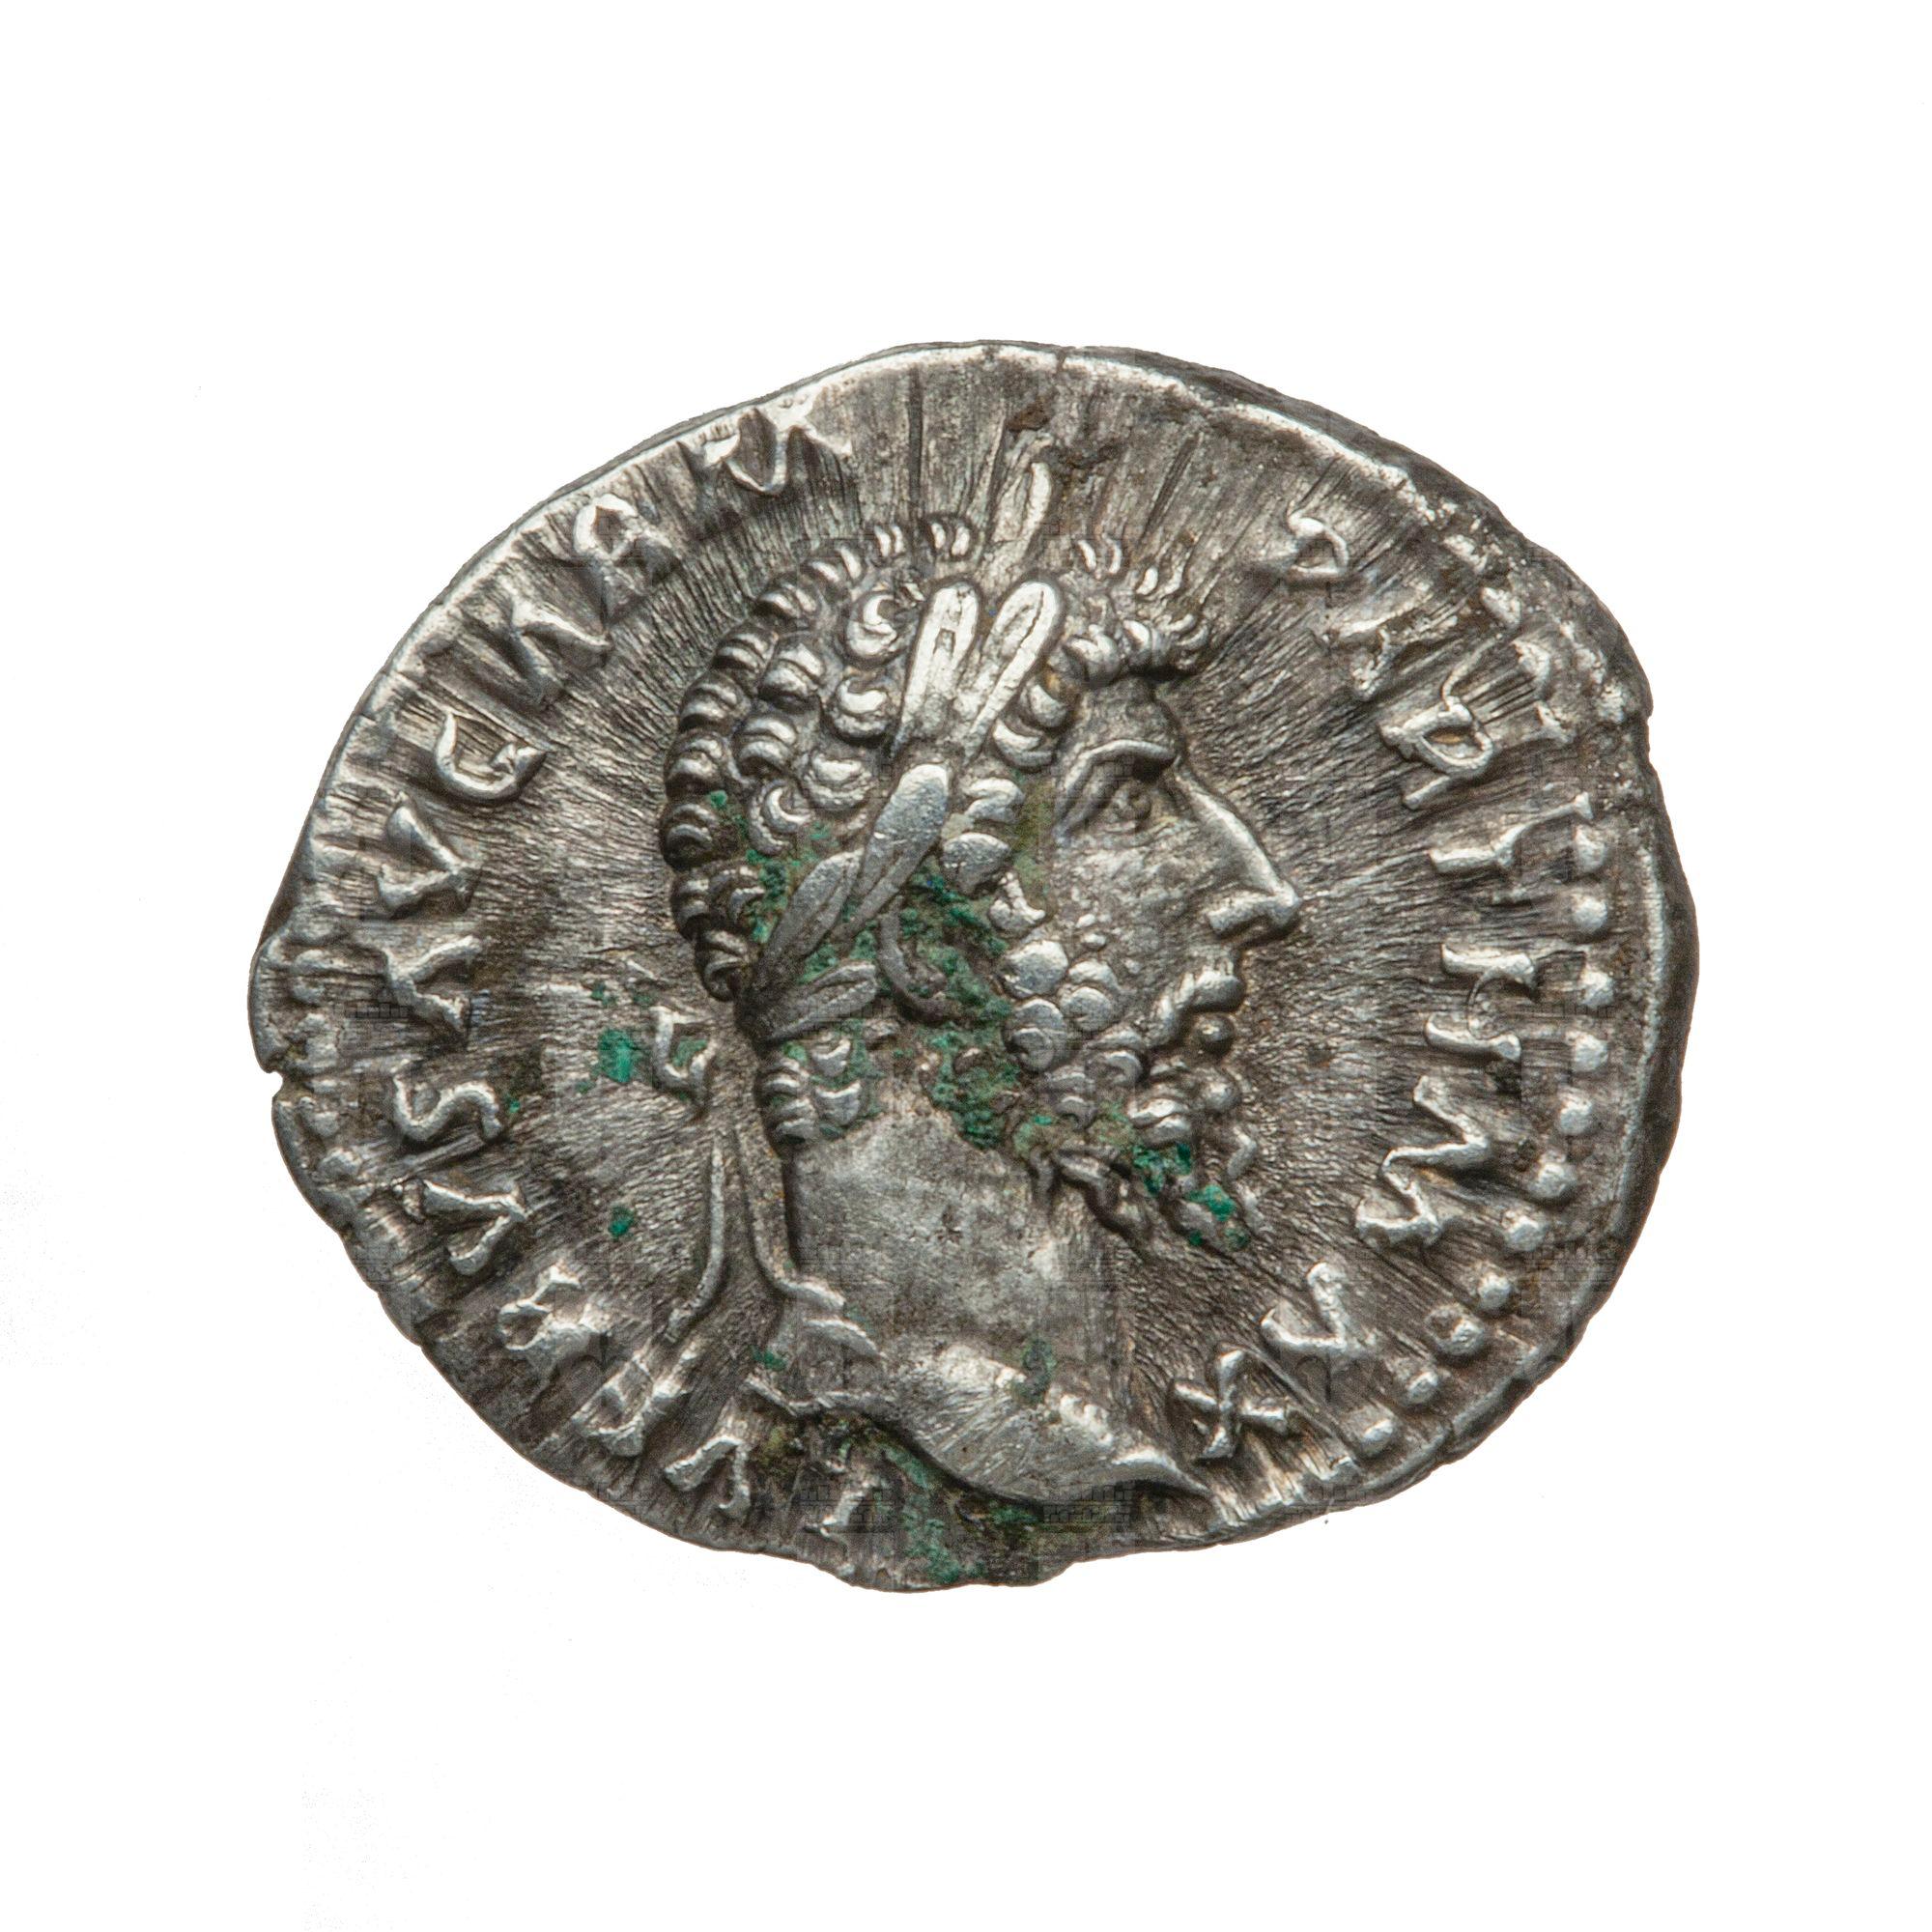 https://catalogomusei.comune.trieste.it/samira/resource/image/reperti-archeologici/Roma 1043 D Lucio Vero.jpg?token=6514f5ffaf07f